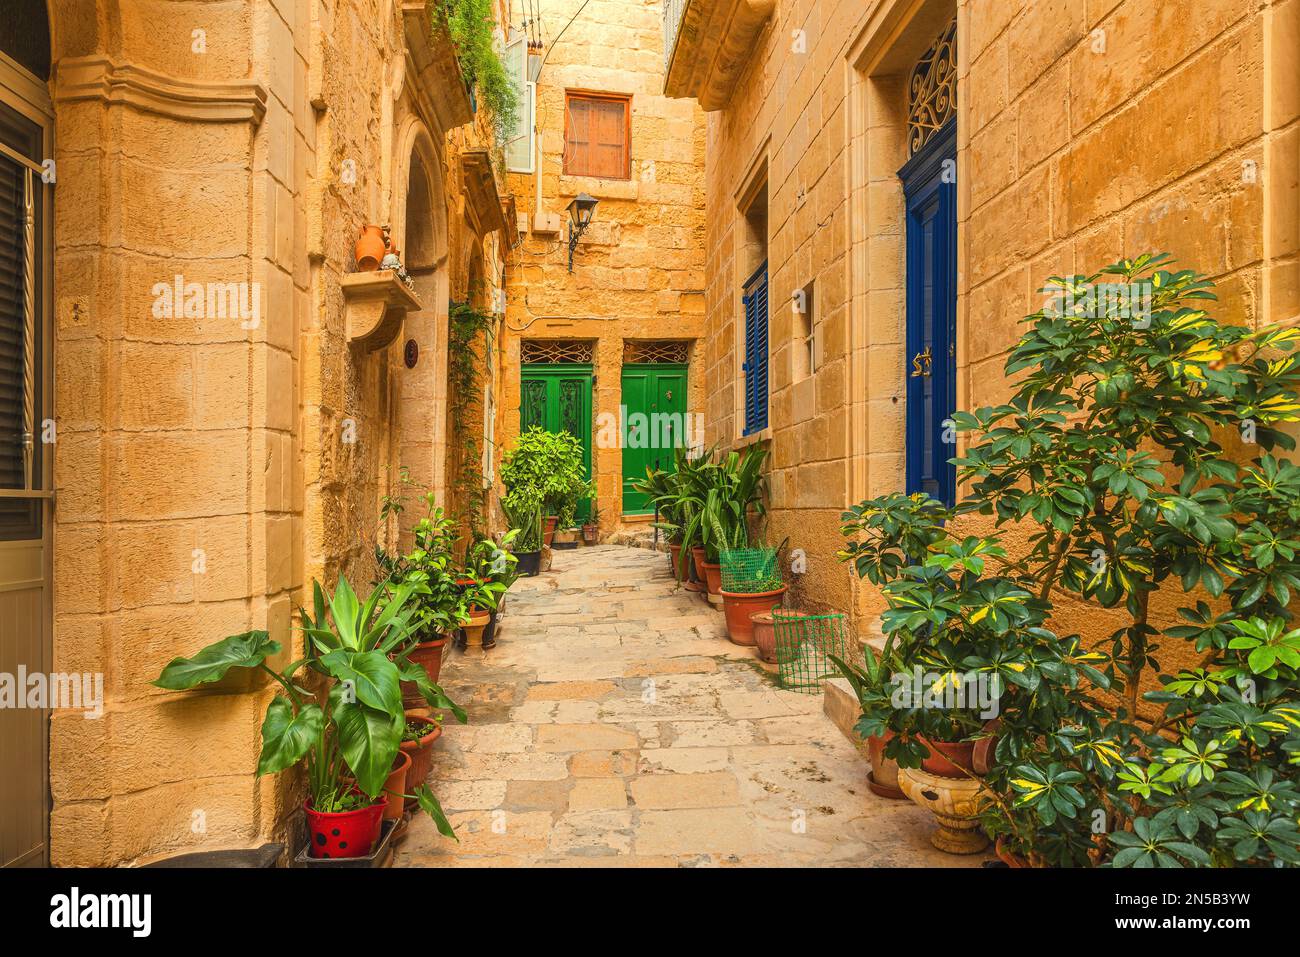 Vasi di fiori nella vecchia stradina medievale con edifici in pietra gialla nella città di Mdina, Malta. Destinazione di viaggio in Europa Foto Stock